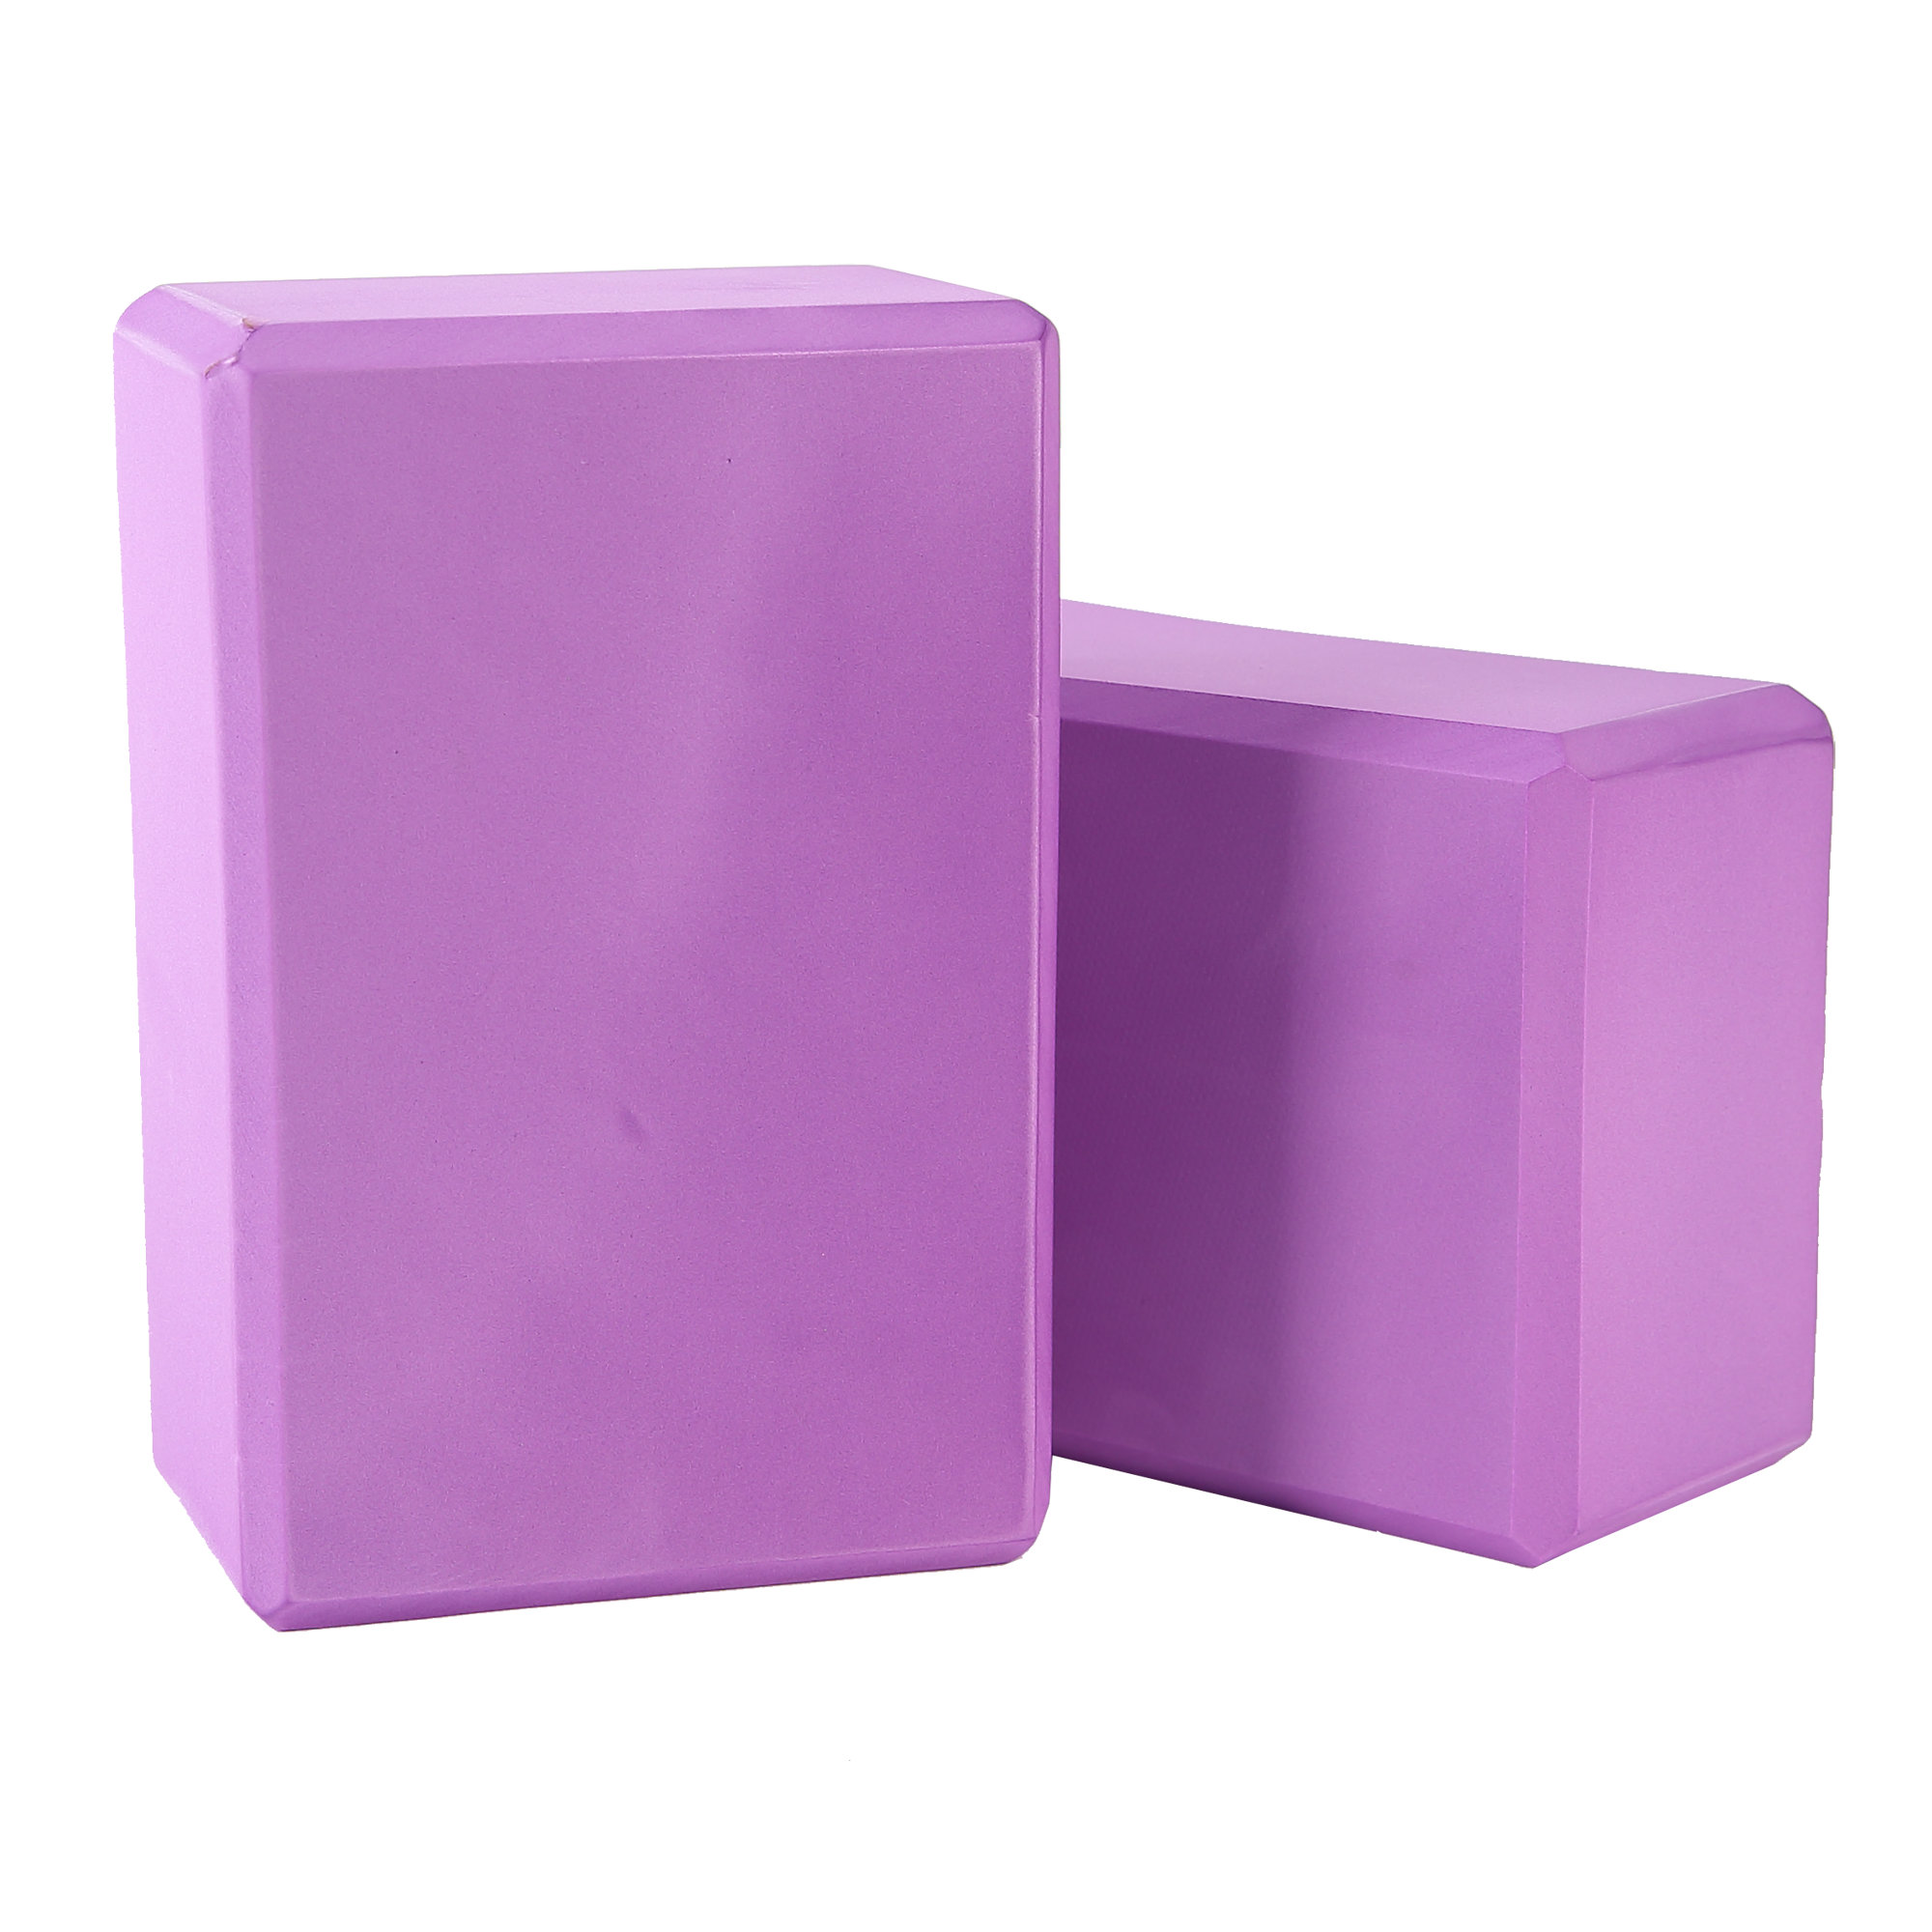 Eco Foam Yoga Blocks, Set of 2, with Beveled Edges, 4 X 6 X 9